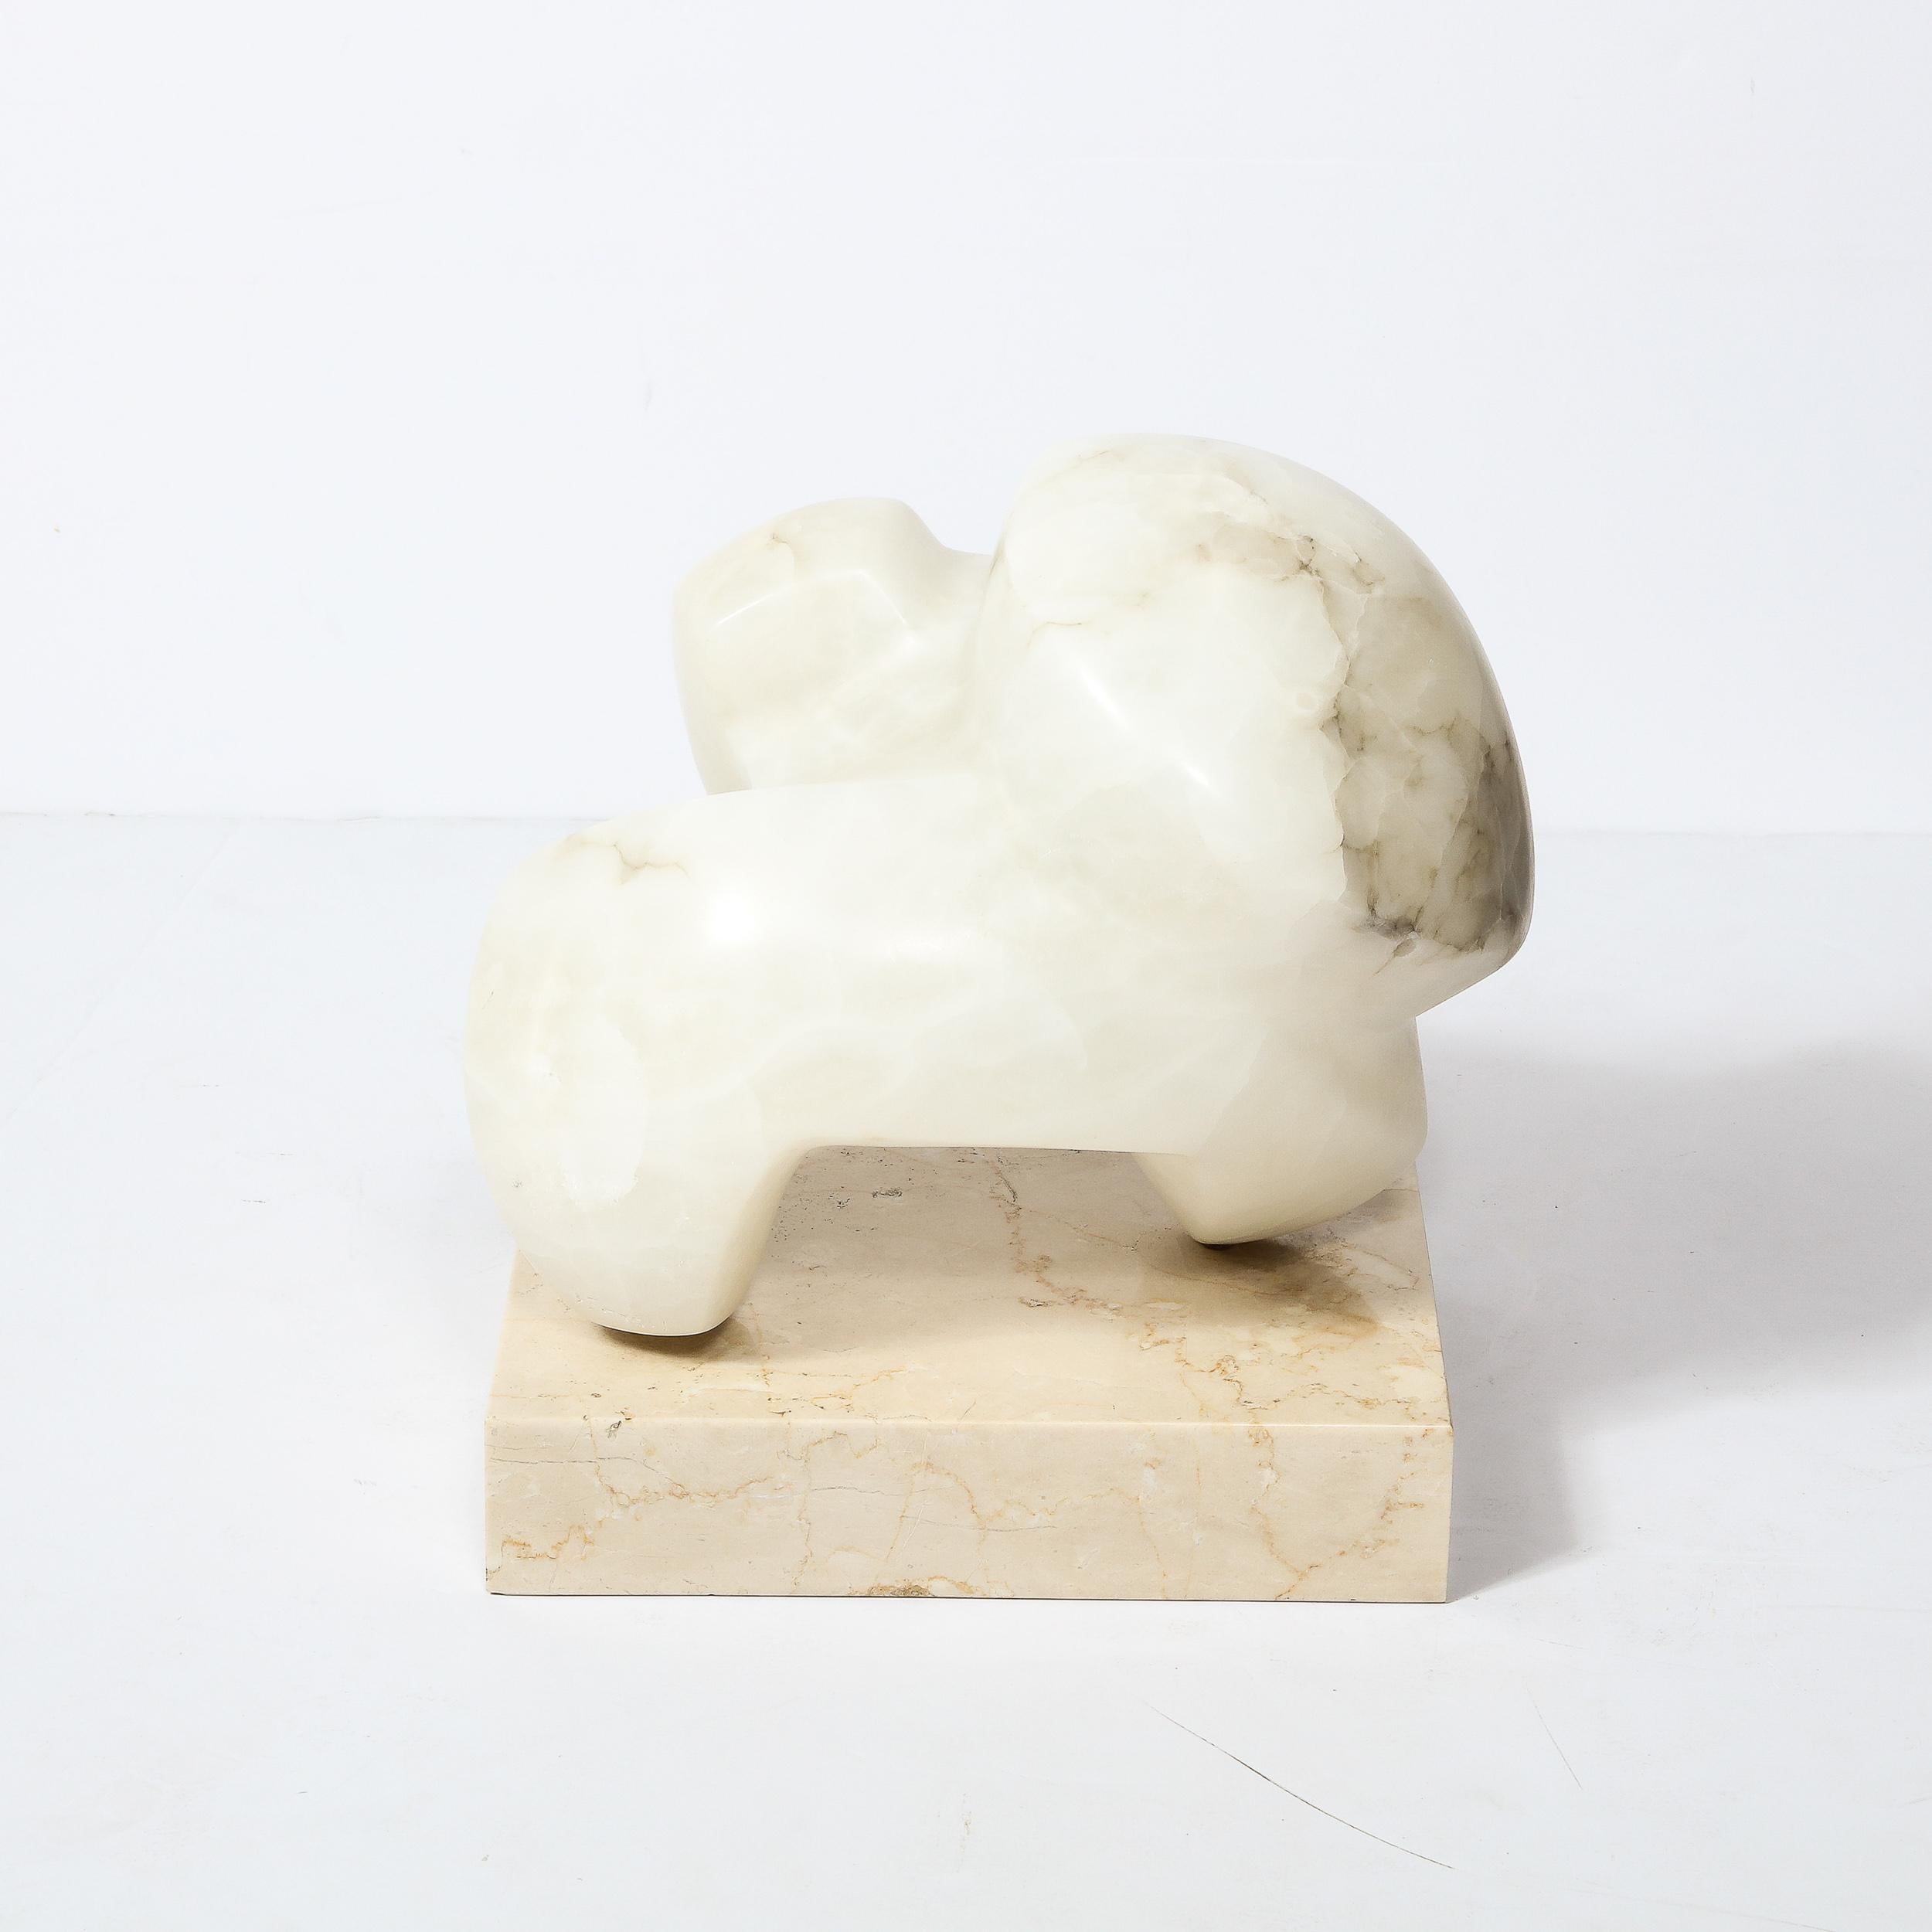 Diese moderne abstrakte Skulptur aus Alabaster auf einem Marmorsockel wurde von der Künstlerin Julie Small Gambly in den Vereinigten Staaten um 1985 geschaffen. Mit einer wunderschönen Maserung im Alabaster und einem geradlinigen, massiven